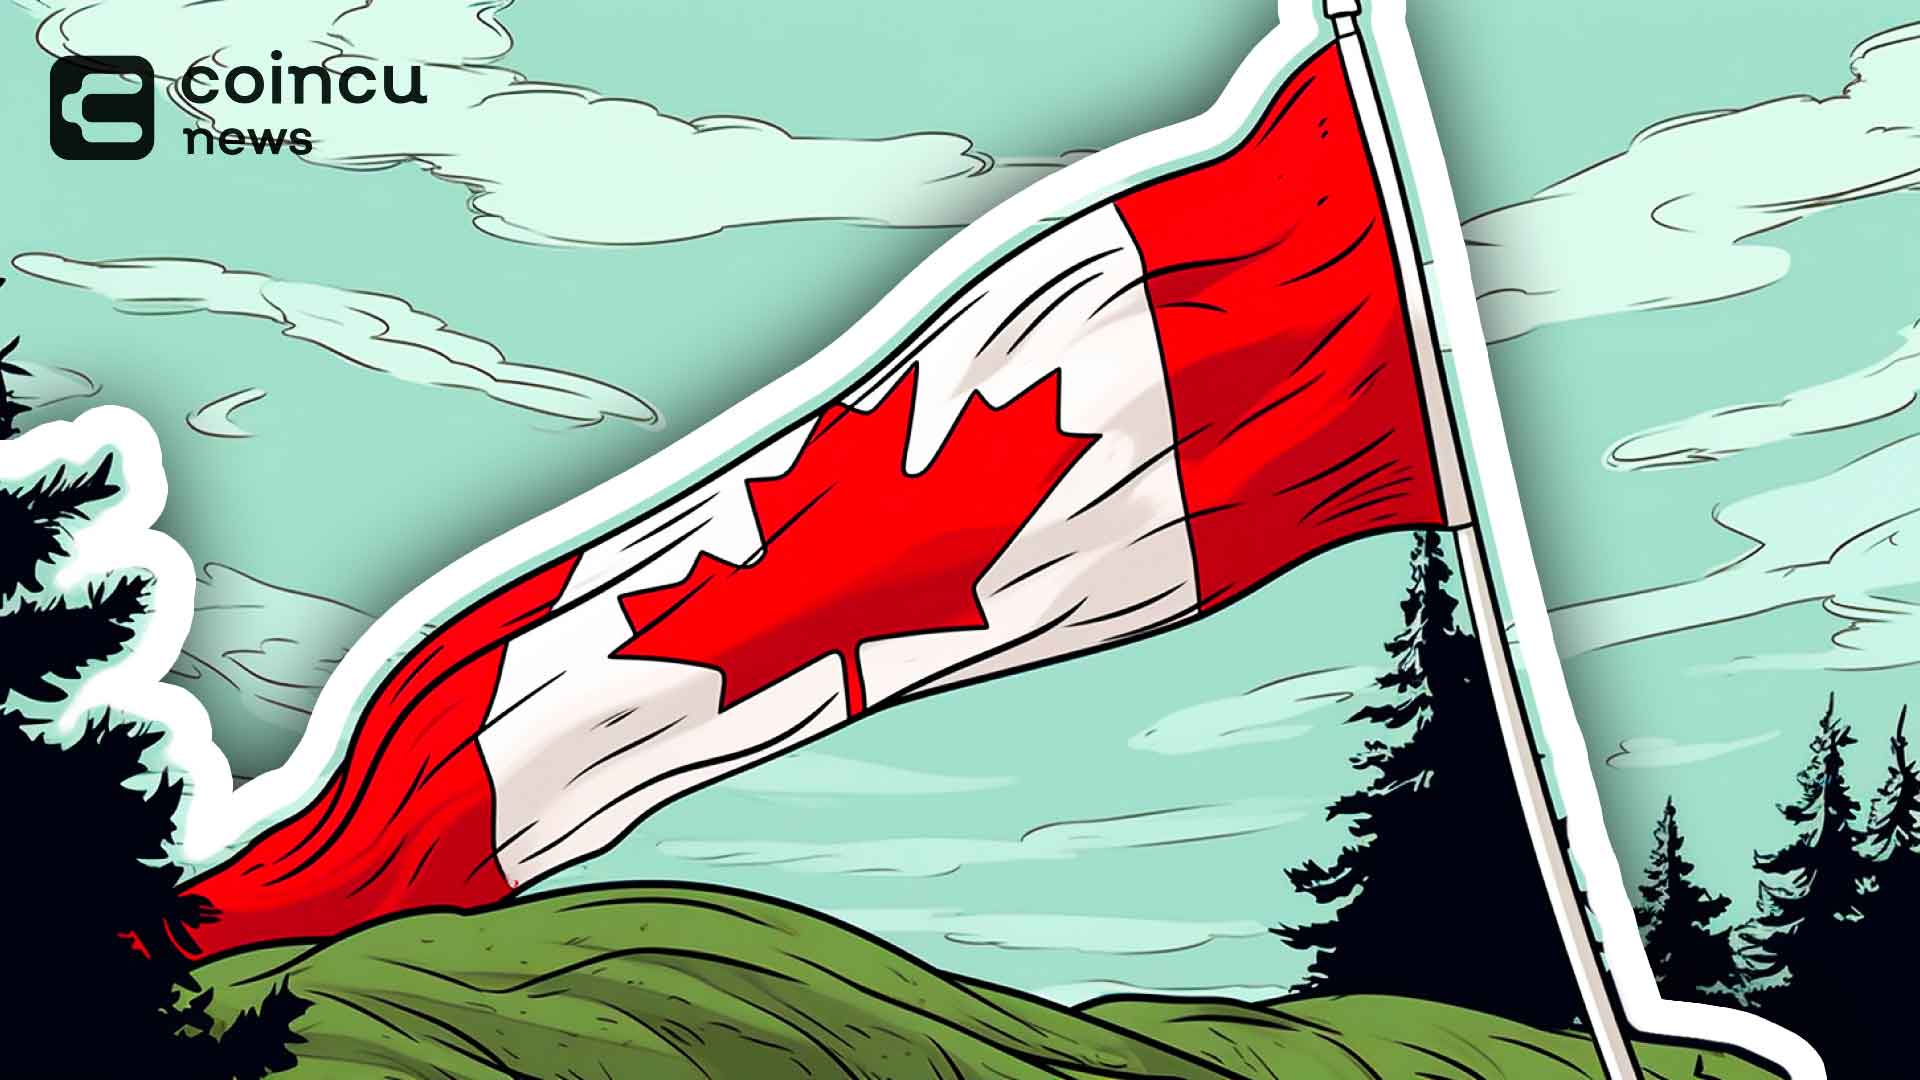 Die Coinbase-Lizenz in Kanada wurde jetzt im Zuge der Bemühungen zur Einhaltung gesetzlicher Vorschriften genehmigt